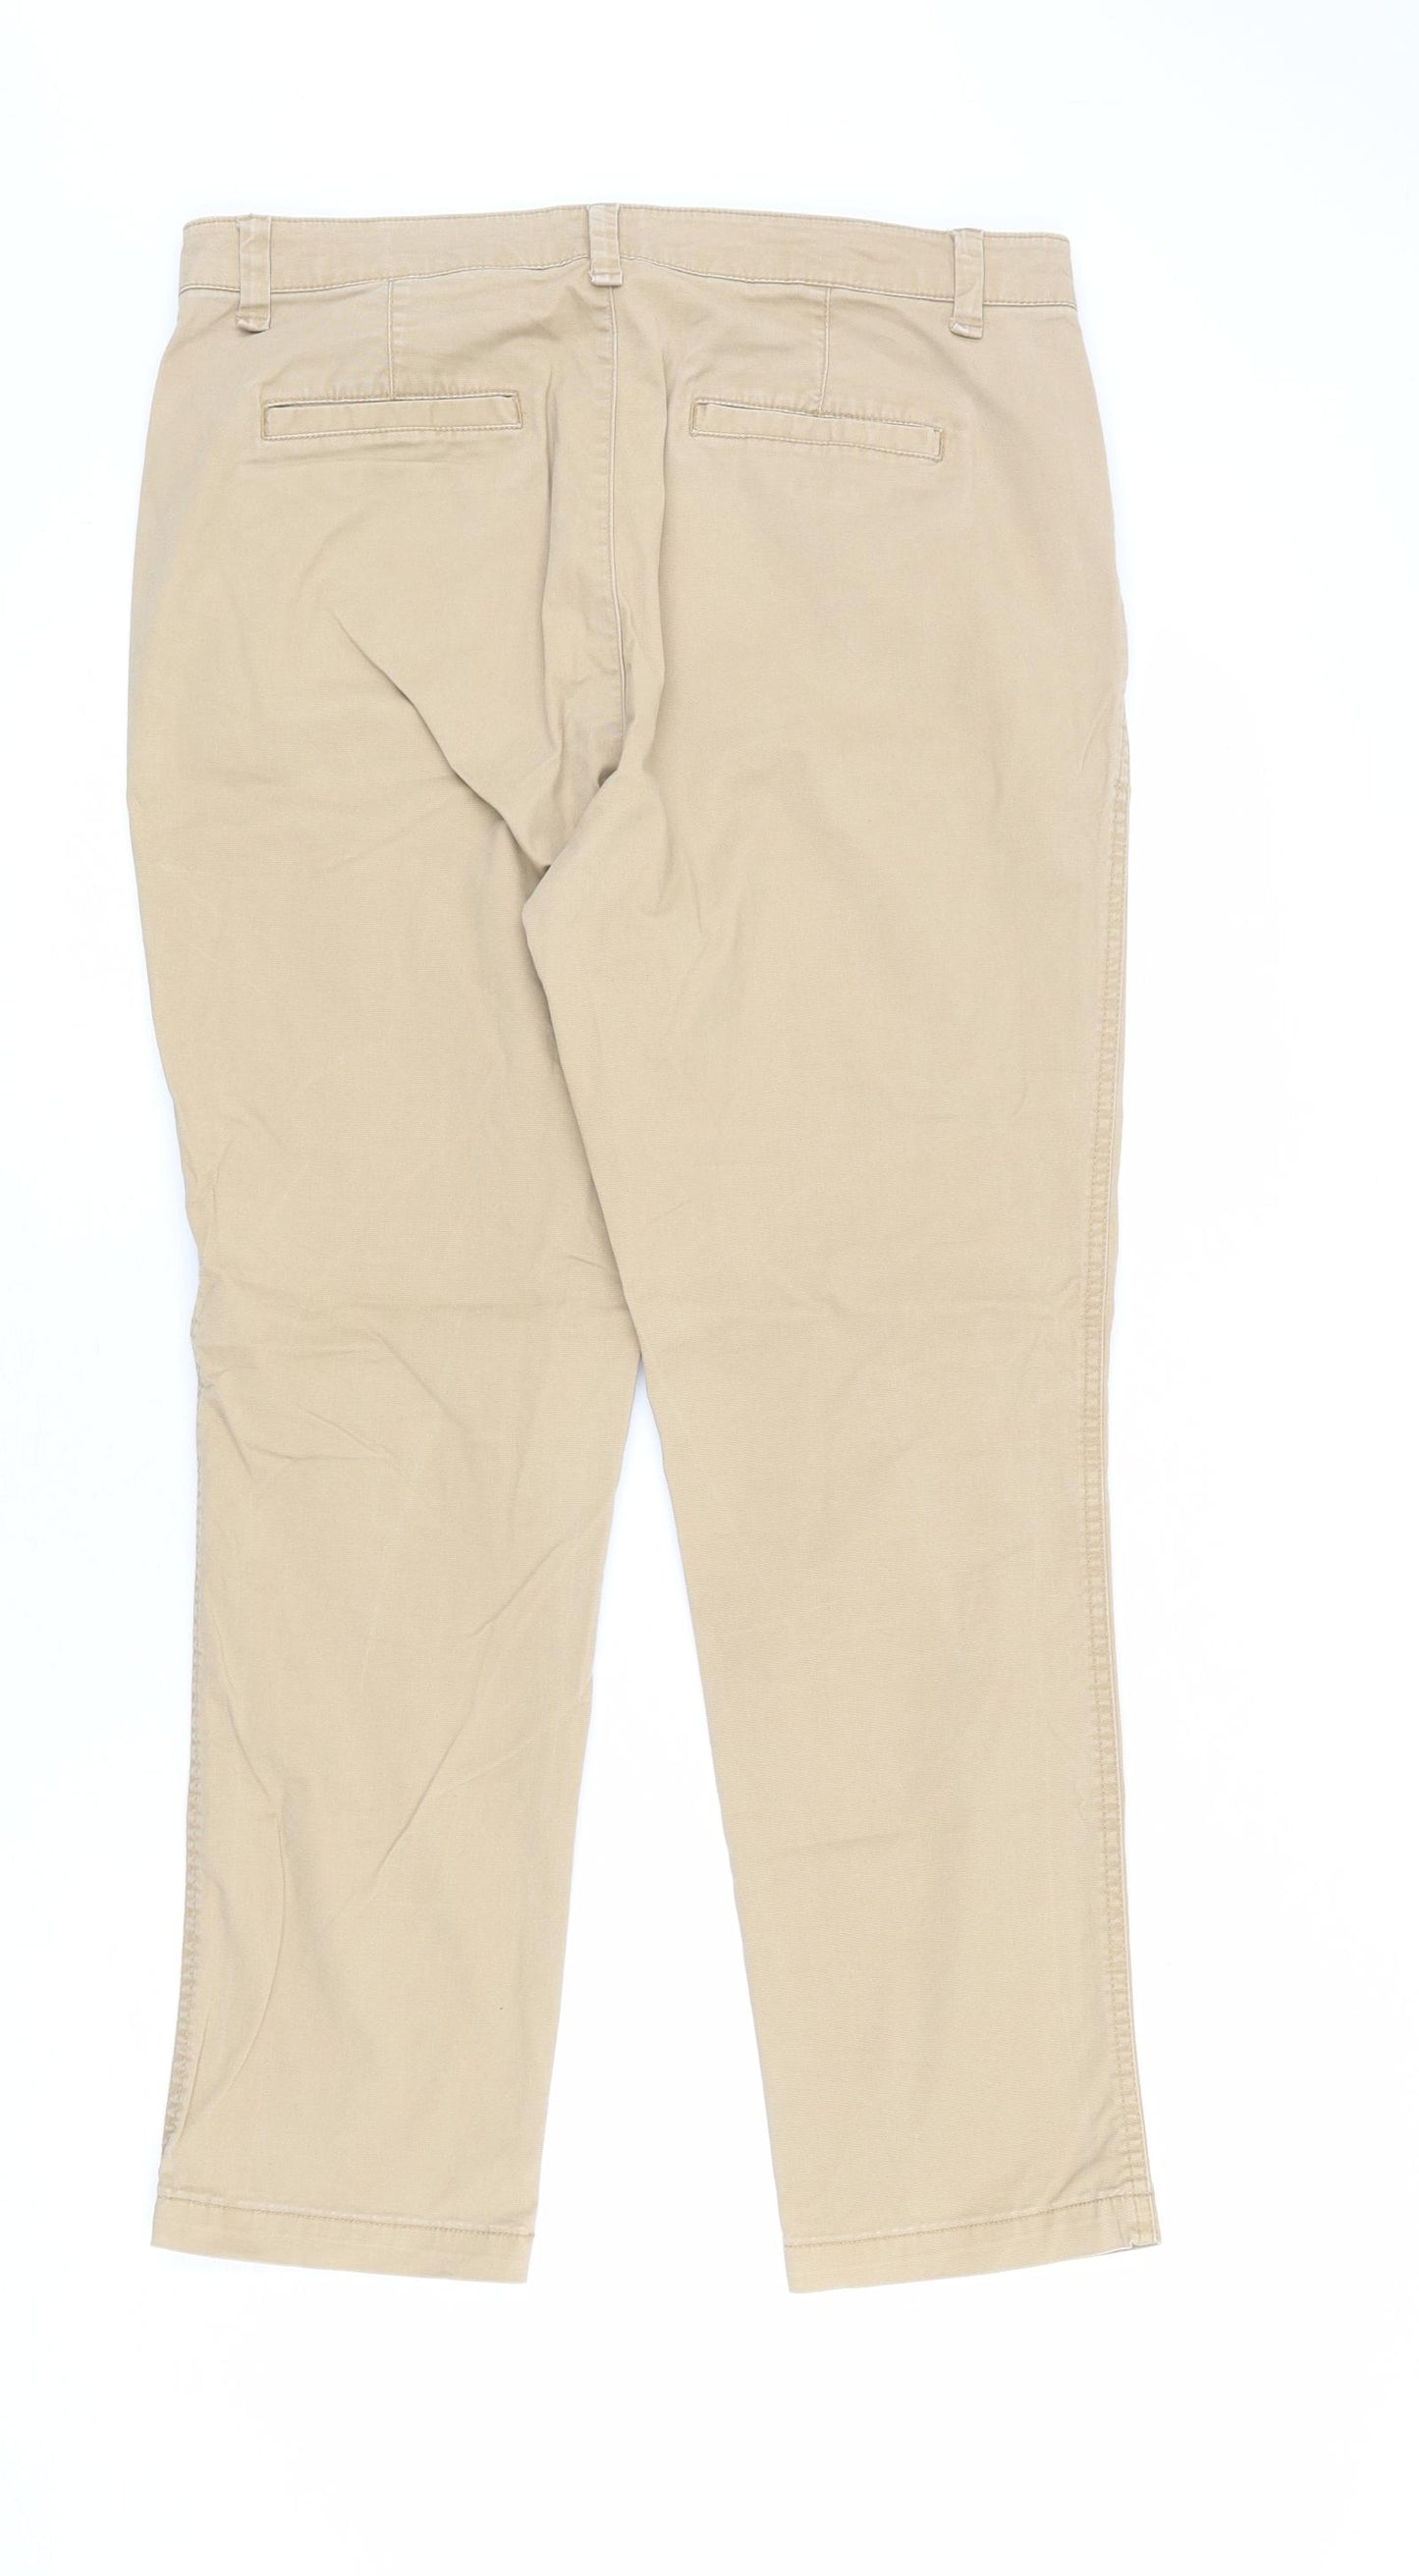 Gap Womens Beige Cotton Trousers Size 8 L27 in Regular Zip